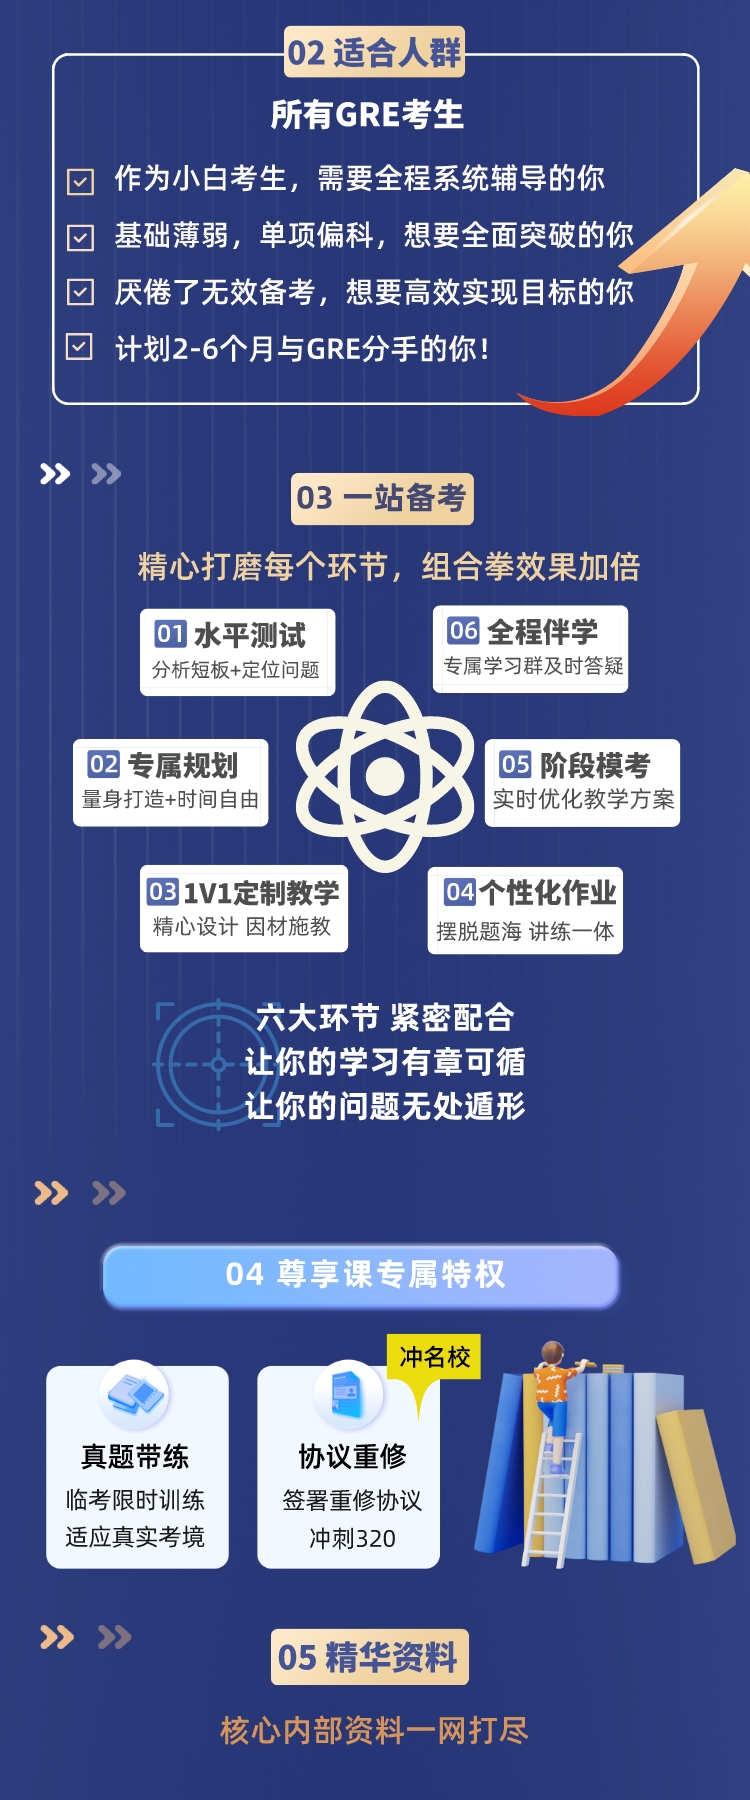 https://simg01.gaodunwangxiao.com/uploadfiles/product-center/202303/27/8260d_20230327144016.jpeg